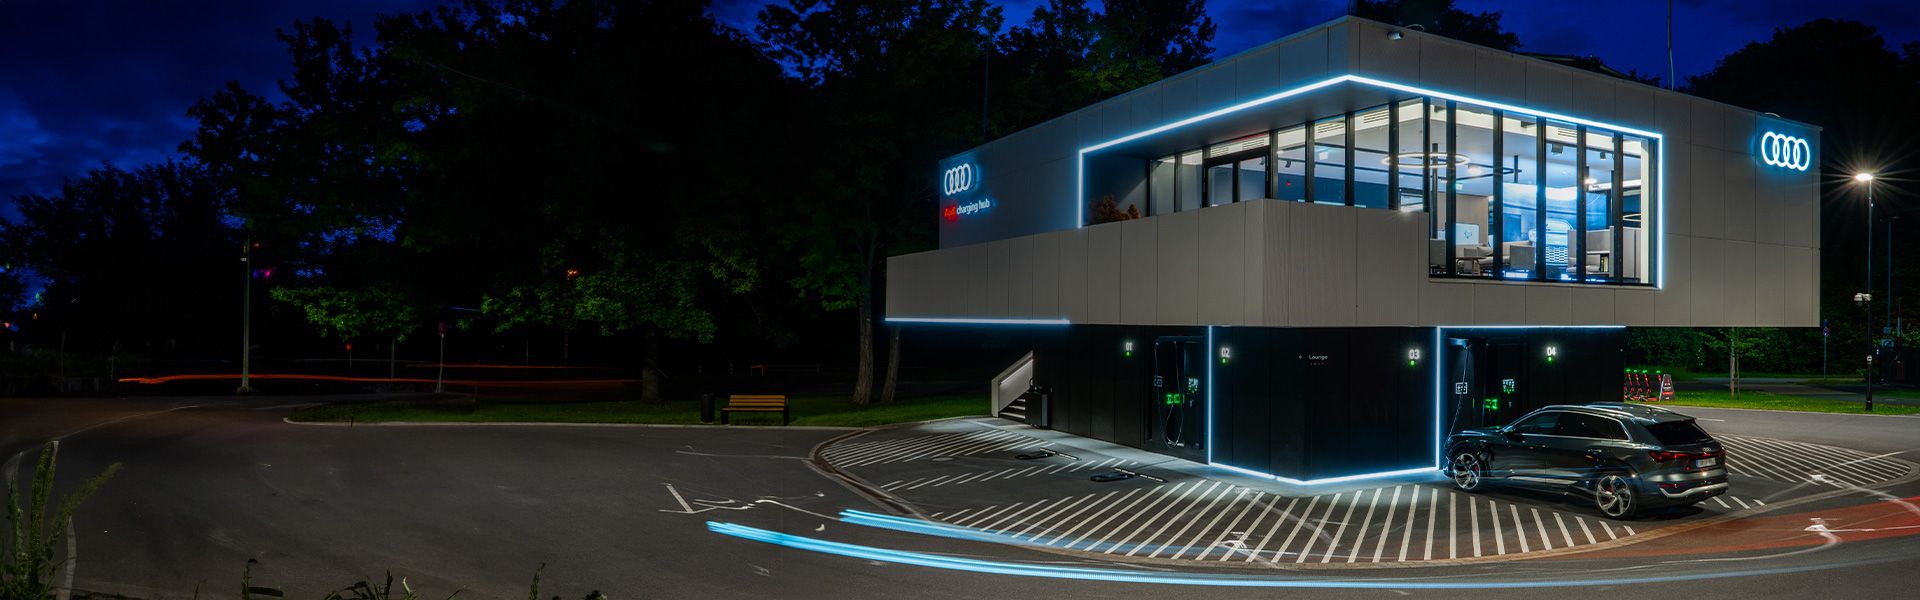 Der beleuchtete Audi charging hub in Nürnberg bei Nacht